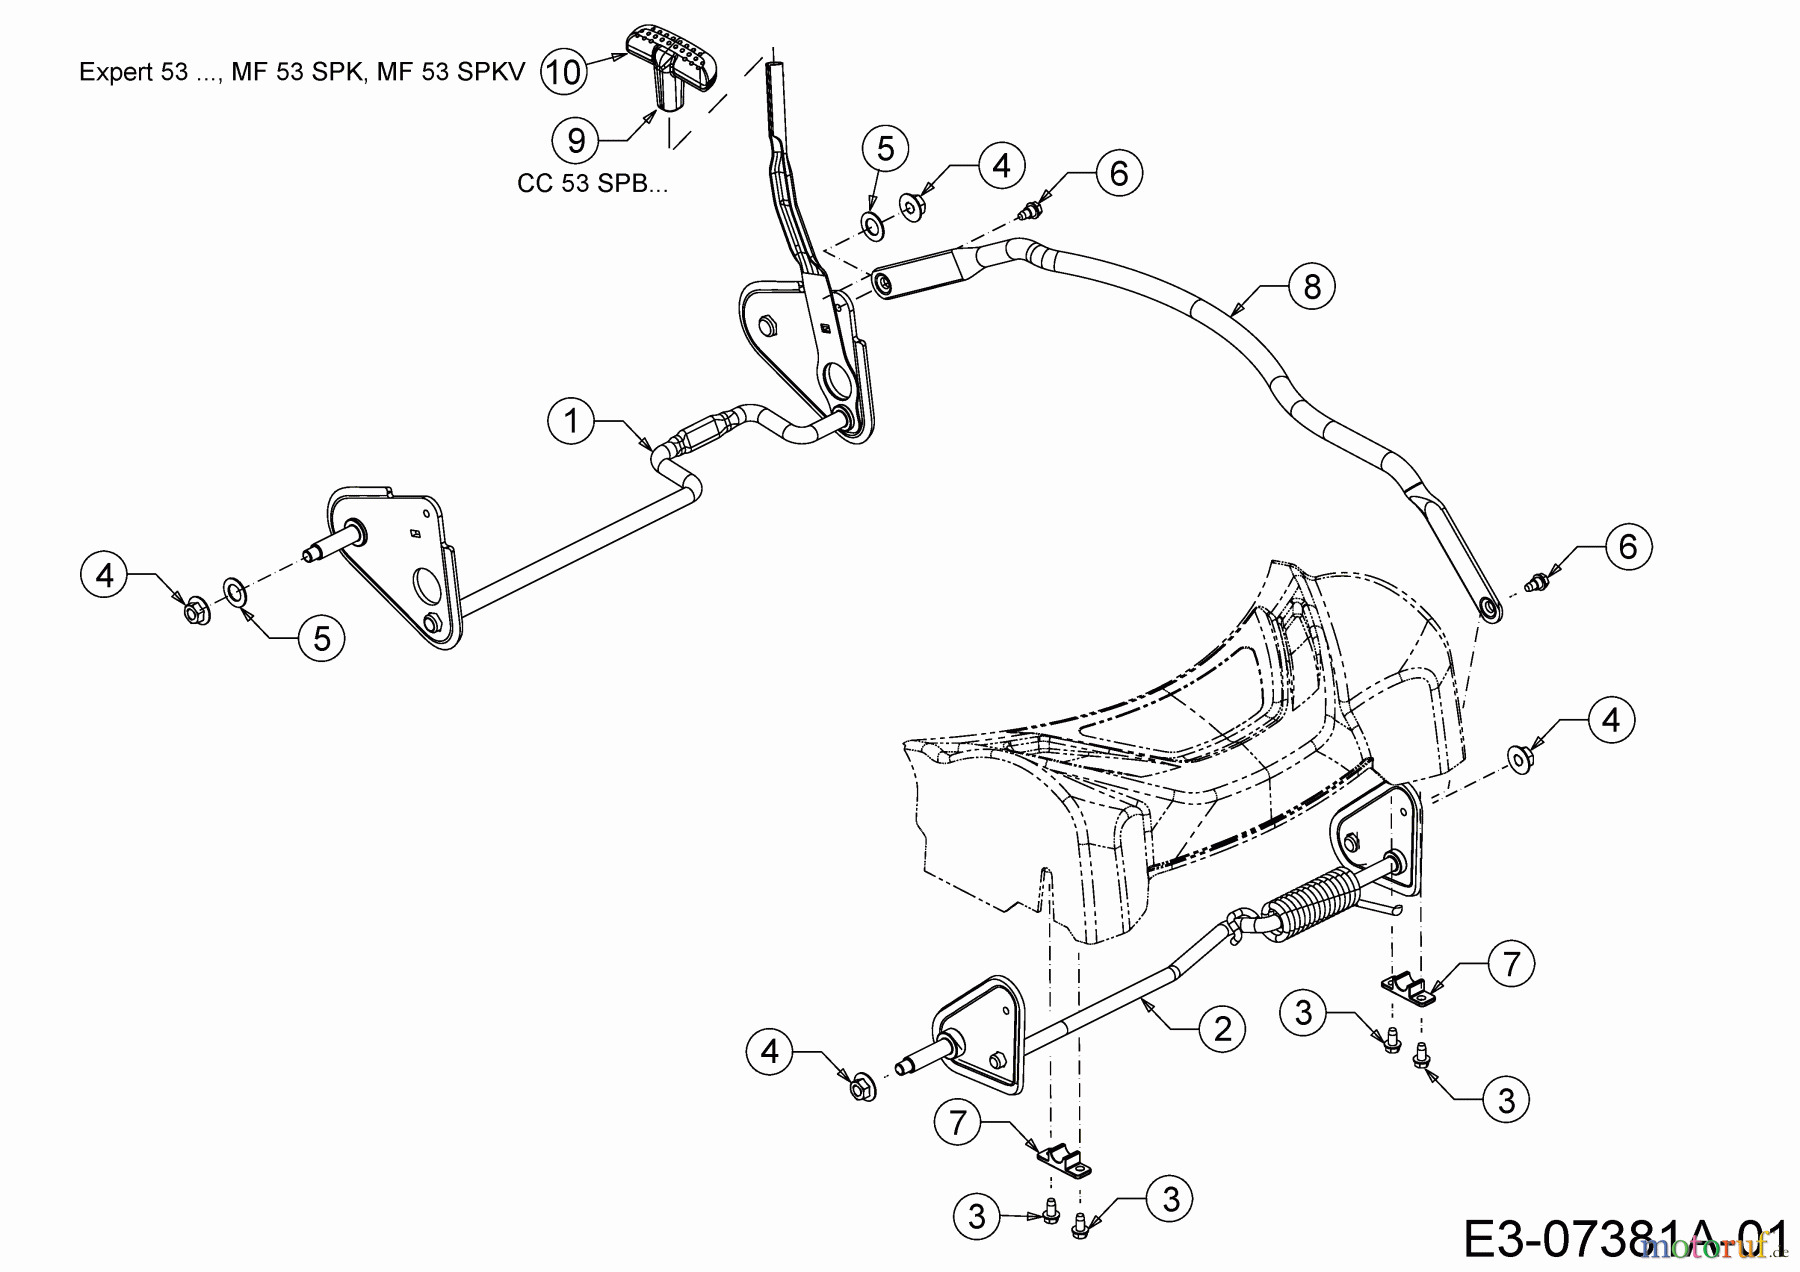  WOLF-Garten Expert Petrol mower self propelled Expert 53 BAVES 12BGQ56L650  (2015) Cutting hight adjustment